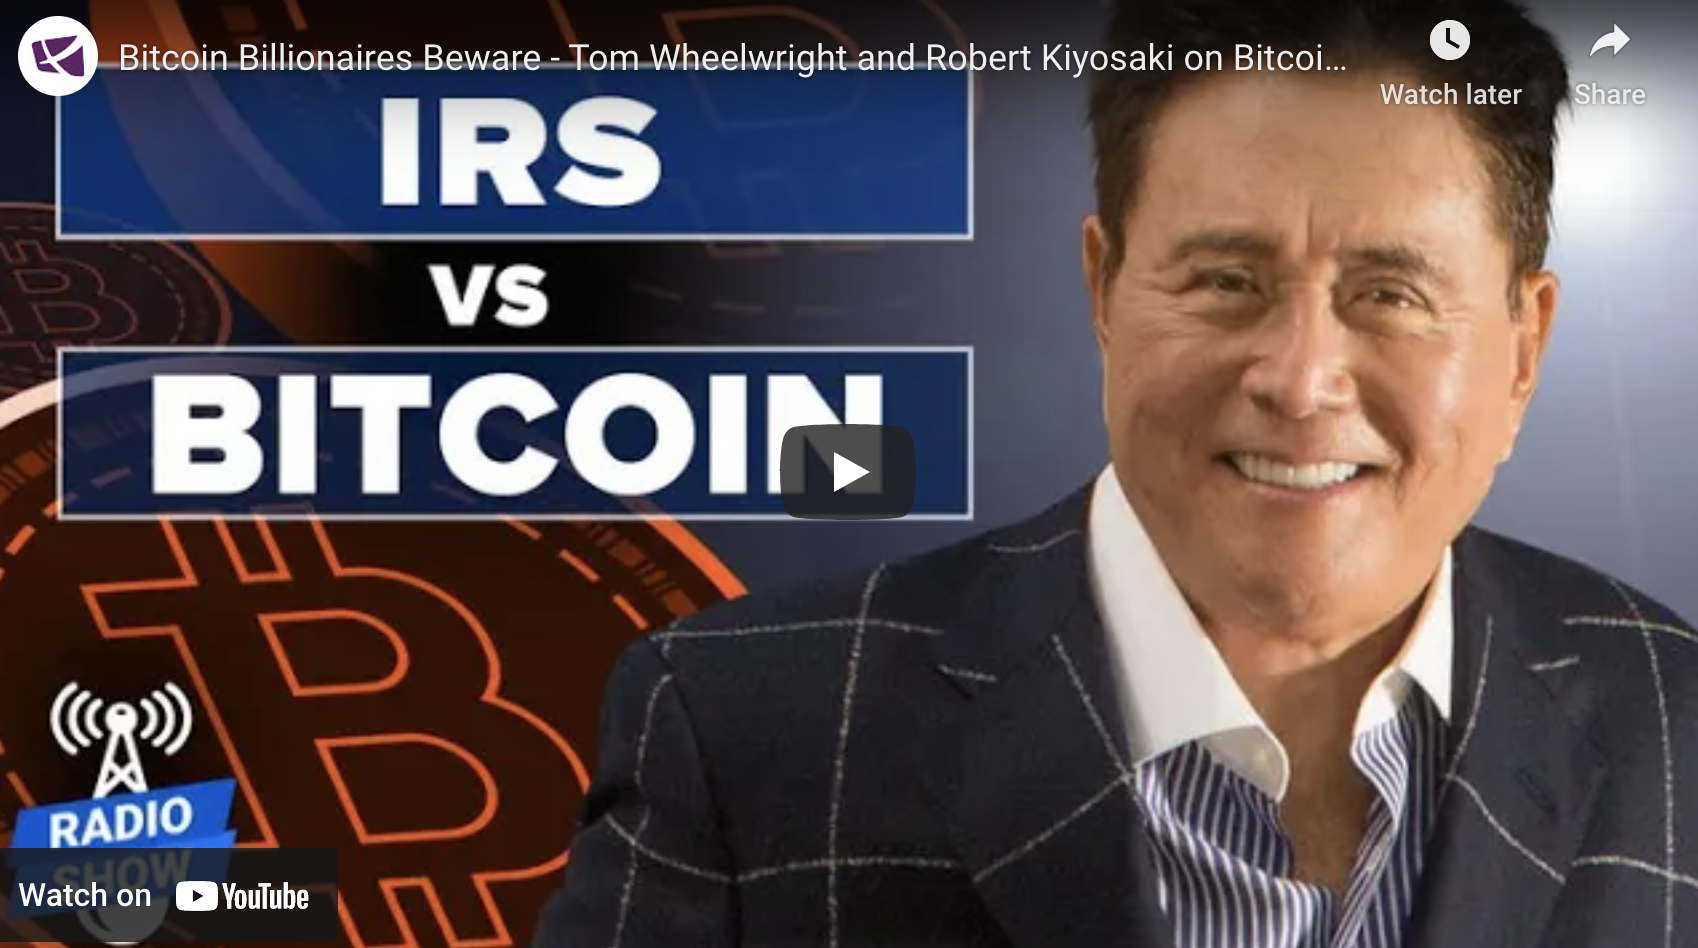 Bitcoin Billionaires Beware - Tom Wheelwright and Robert Kiyosaki on Bitcoin taxes